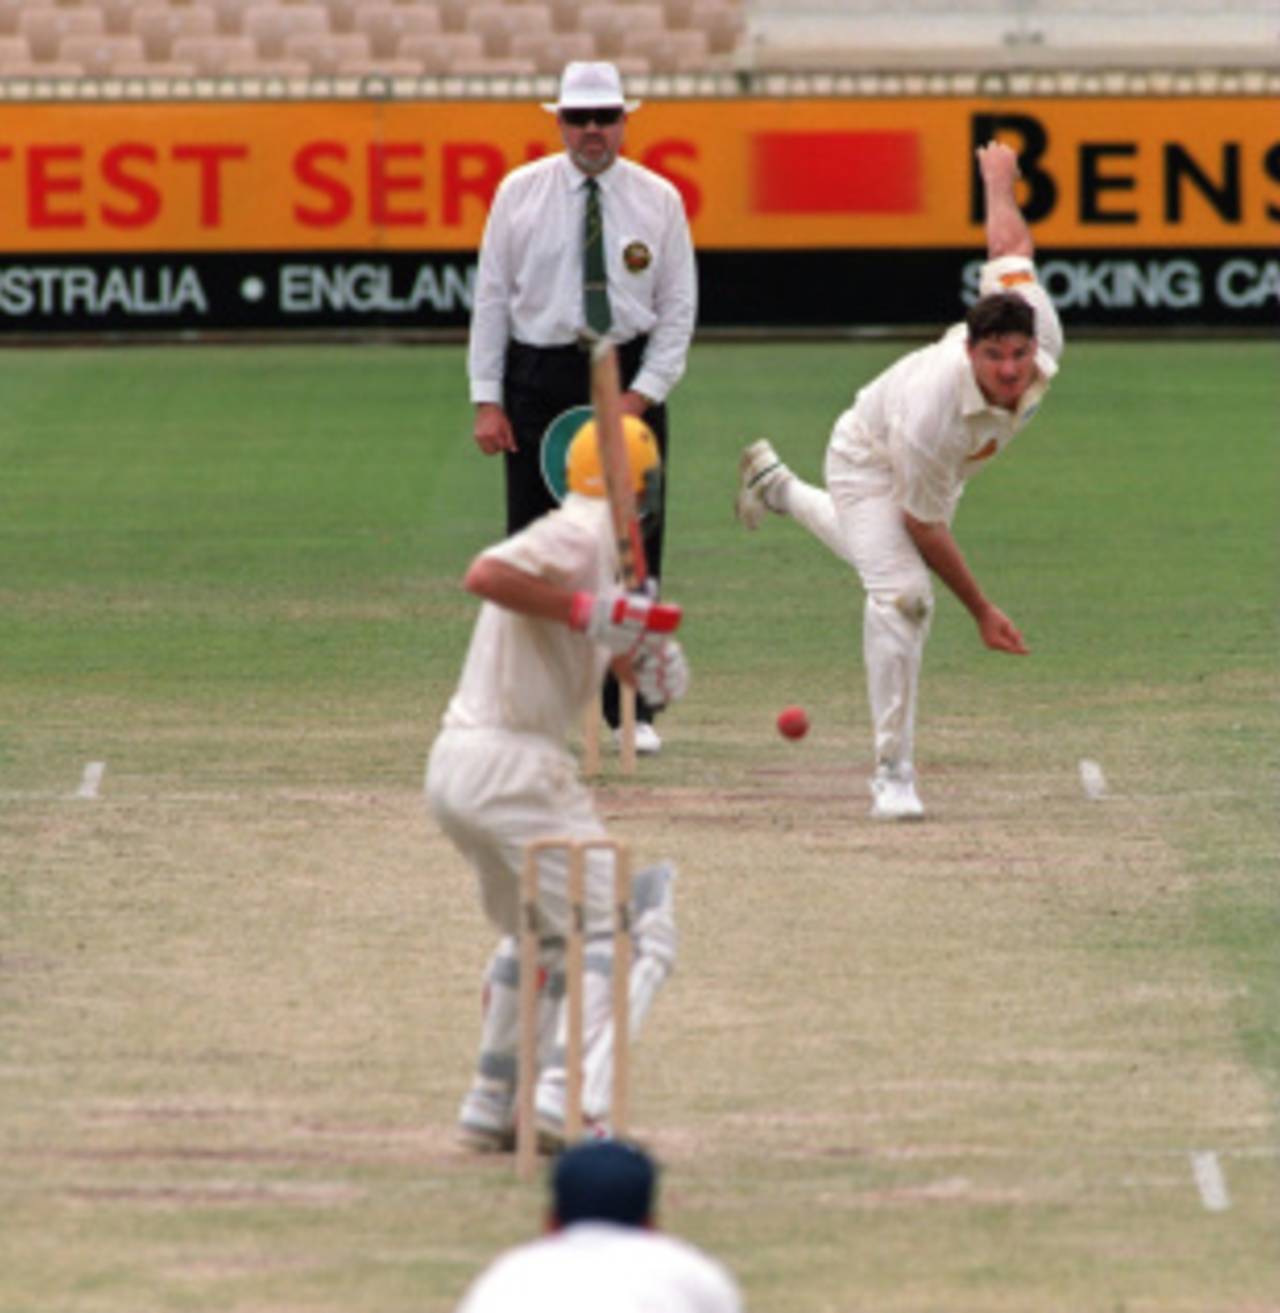 Martin McCague: liked to unsettle batsmen&nbsp;&nbsp;&bull;&nbsp;&nbsp;Getty Images